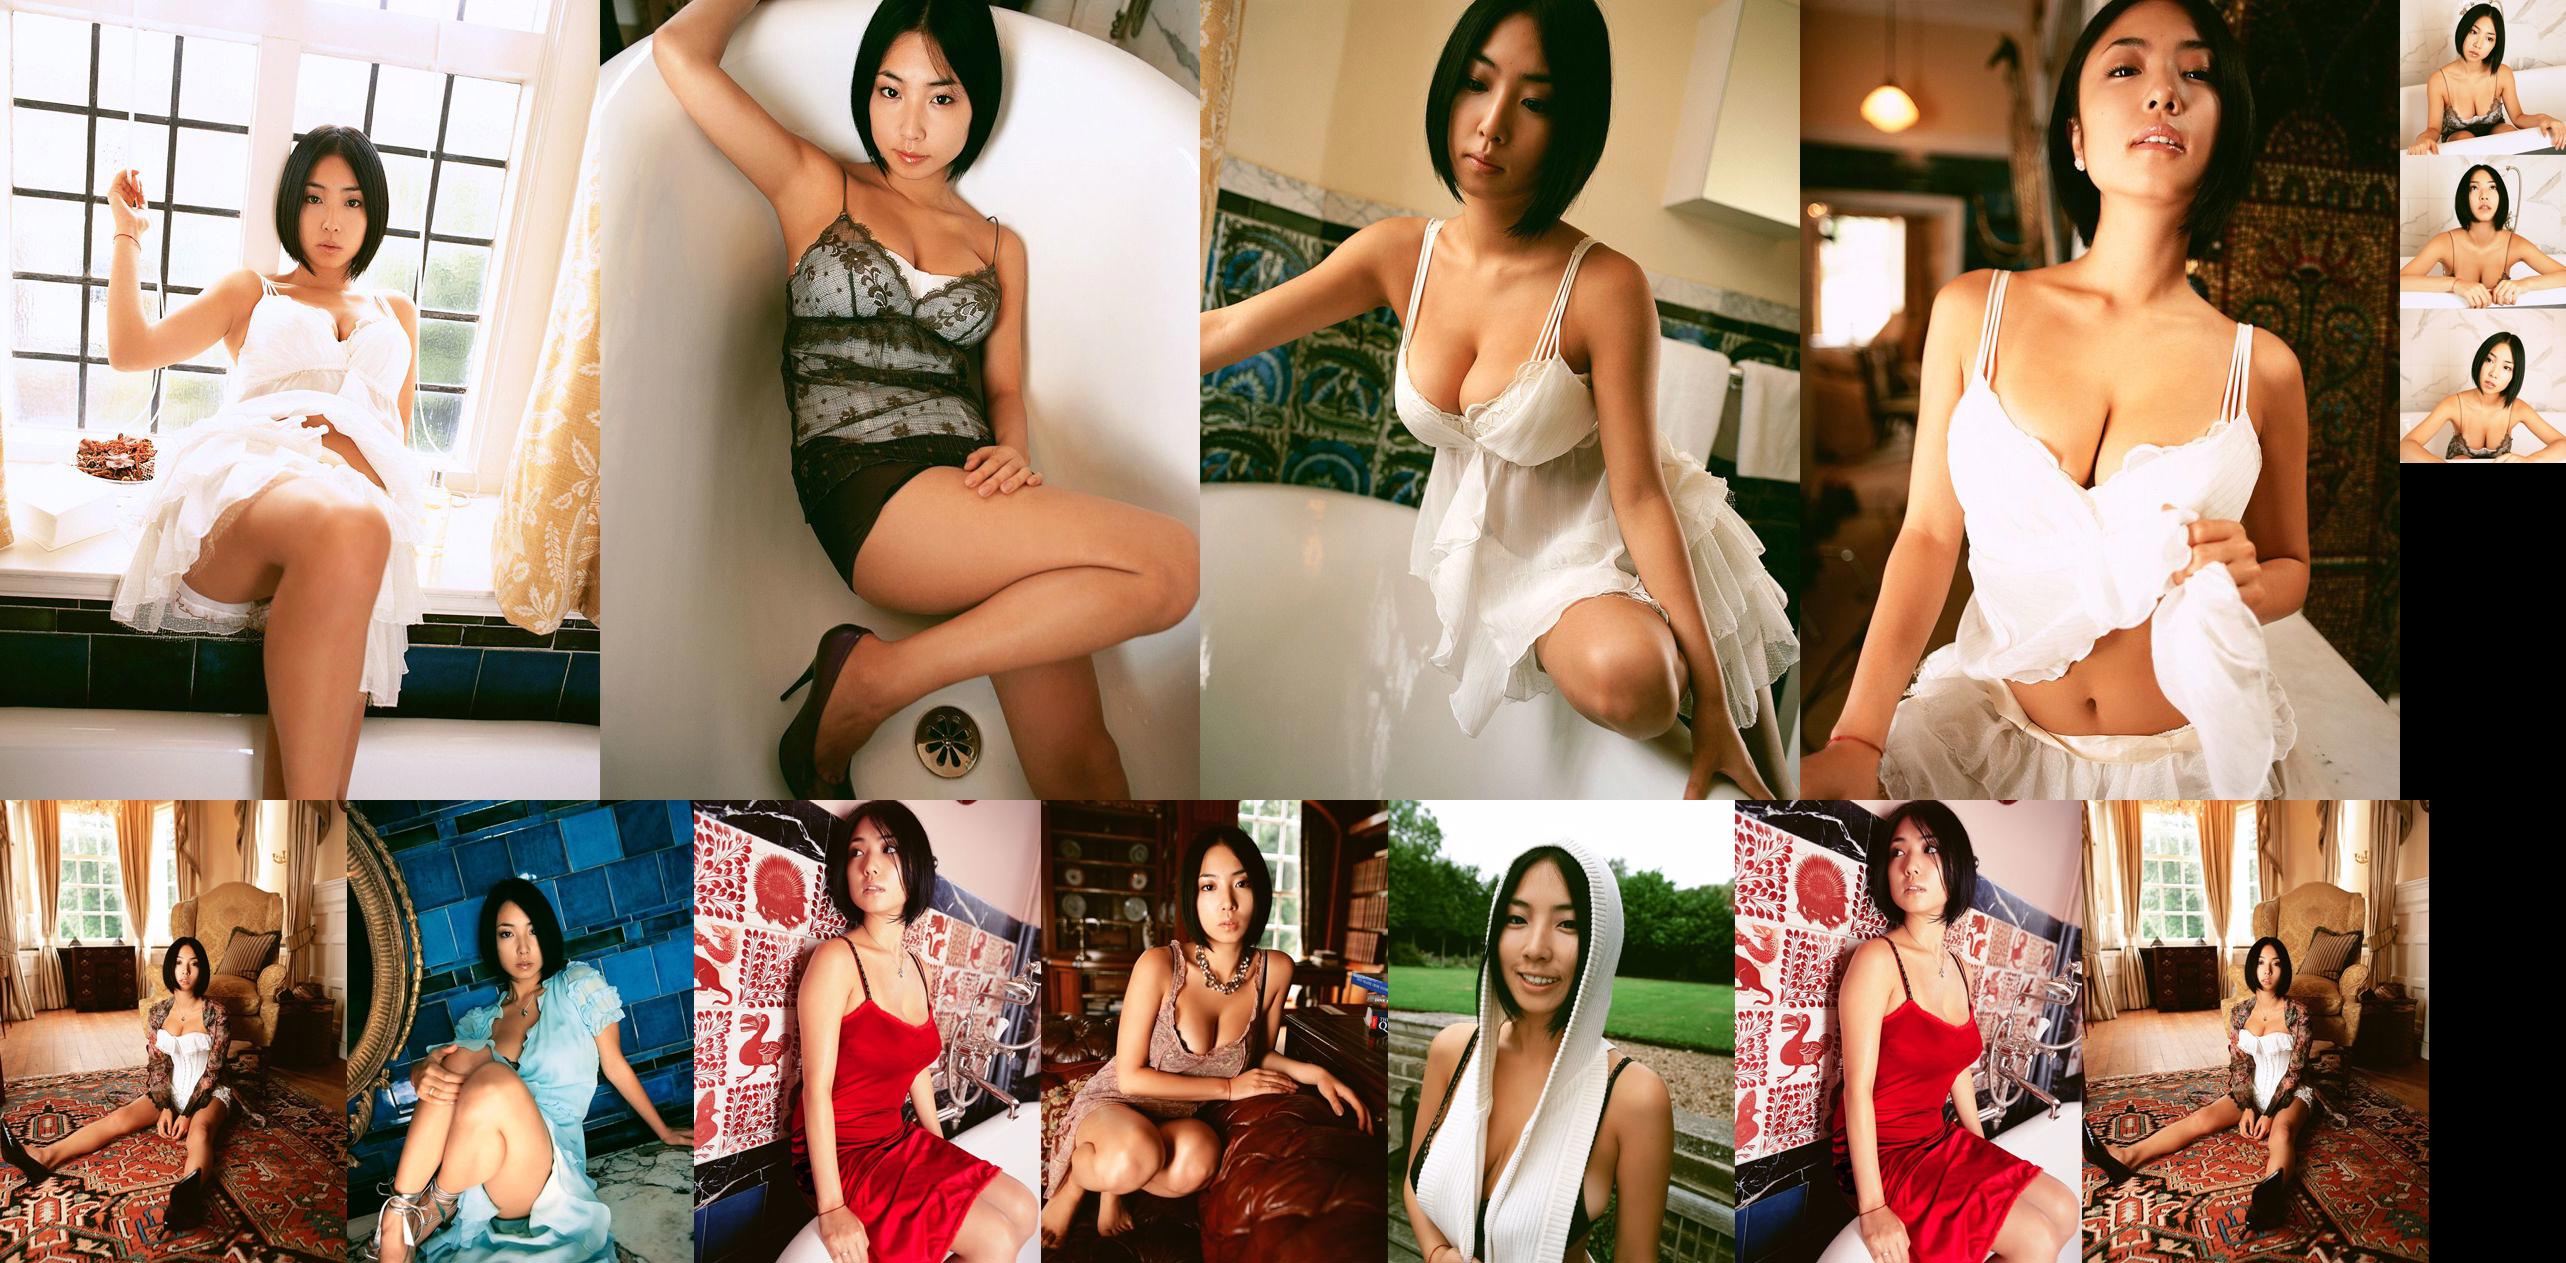 Megumi "Love & Spice" [Bild.tv] No.6b1fa4 Seite 1